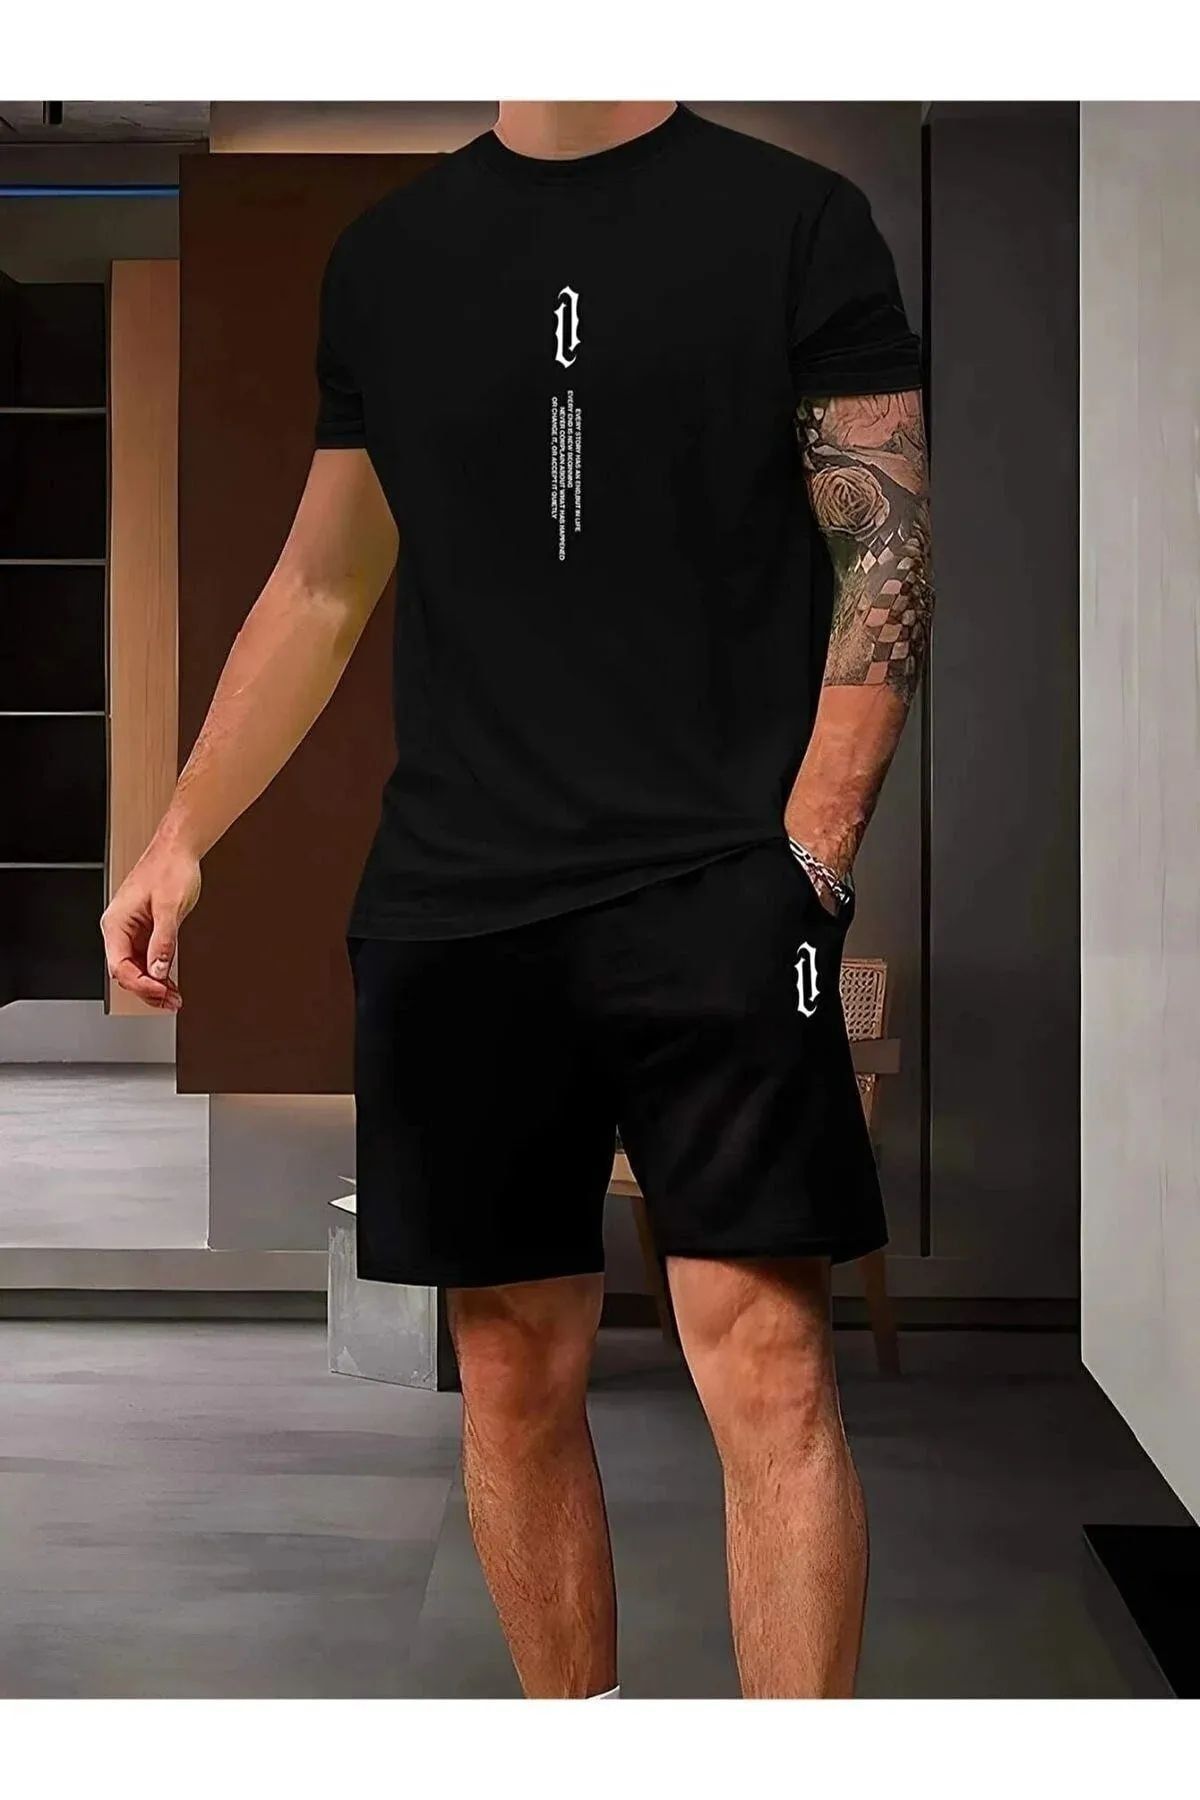 Hunors Sportswear & Company Erkek Siyah Dikey Baskılı Oversize Tişörtlü Takım